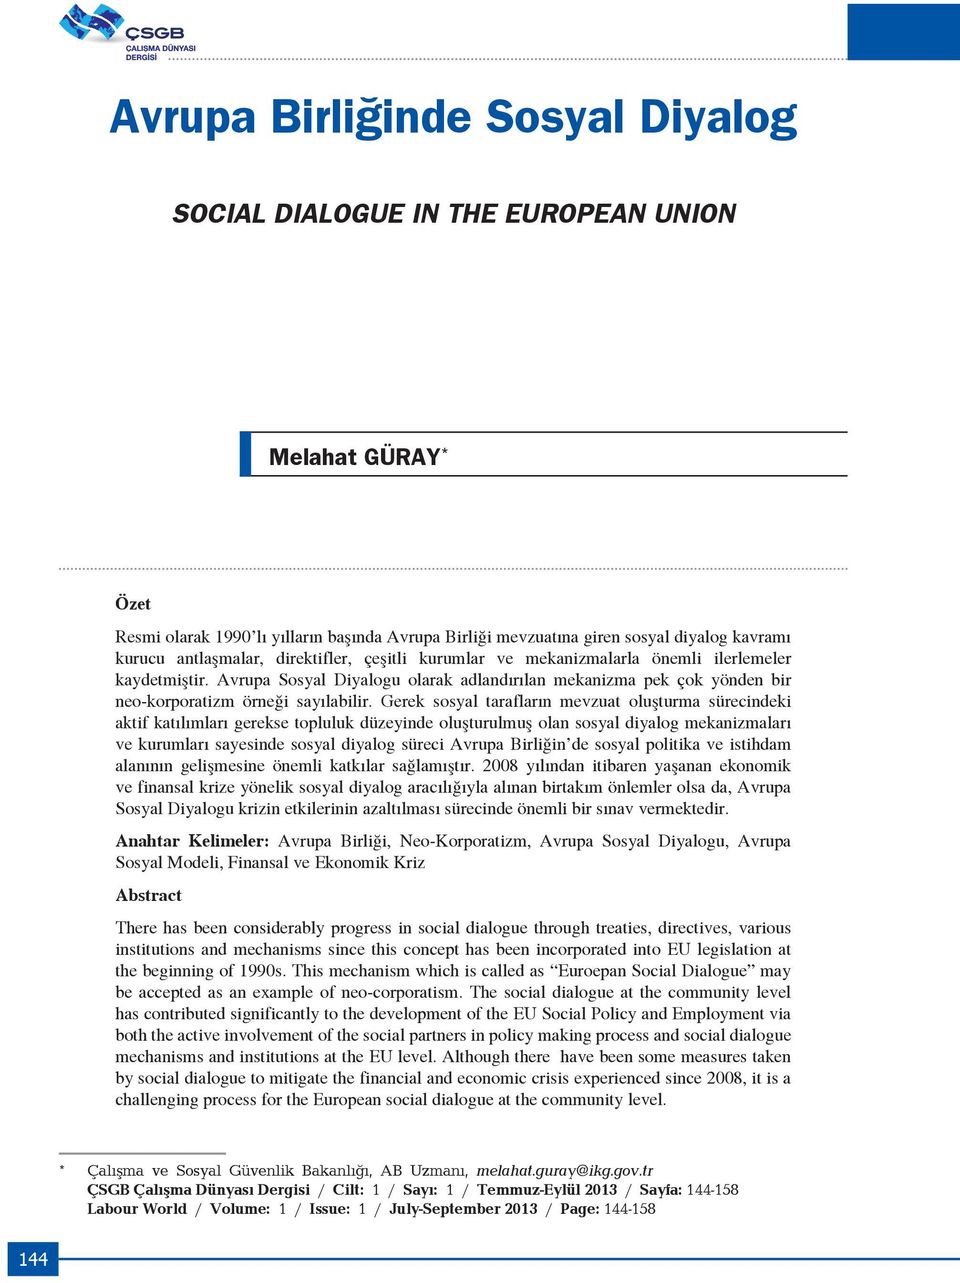 Avrupa Sosyal Diyalogu olarak adlandırılan mekanizma pek çok yönden bir neo-korporatizm örneği sayılabilir.